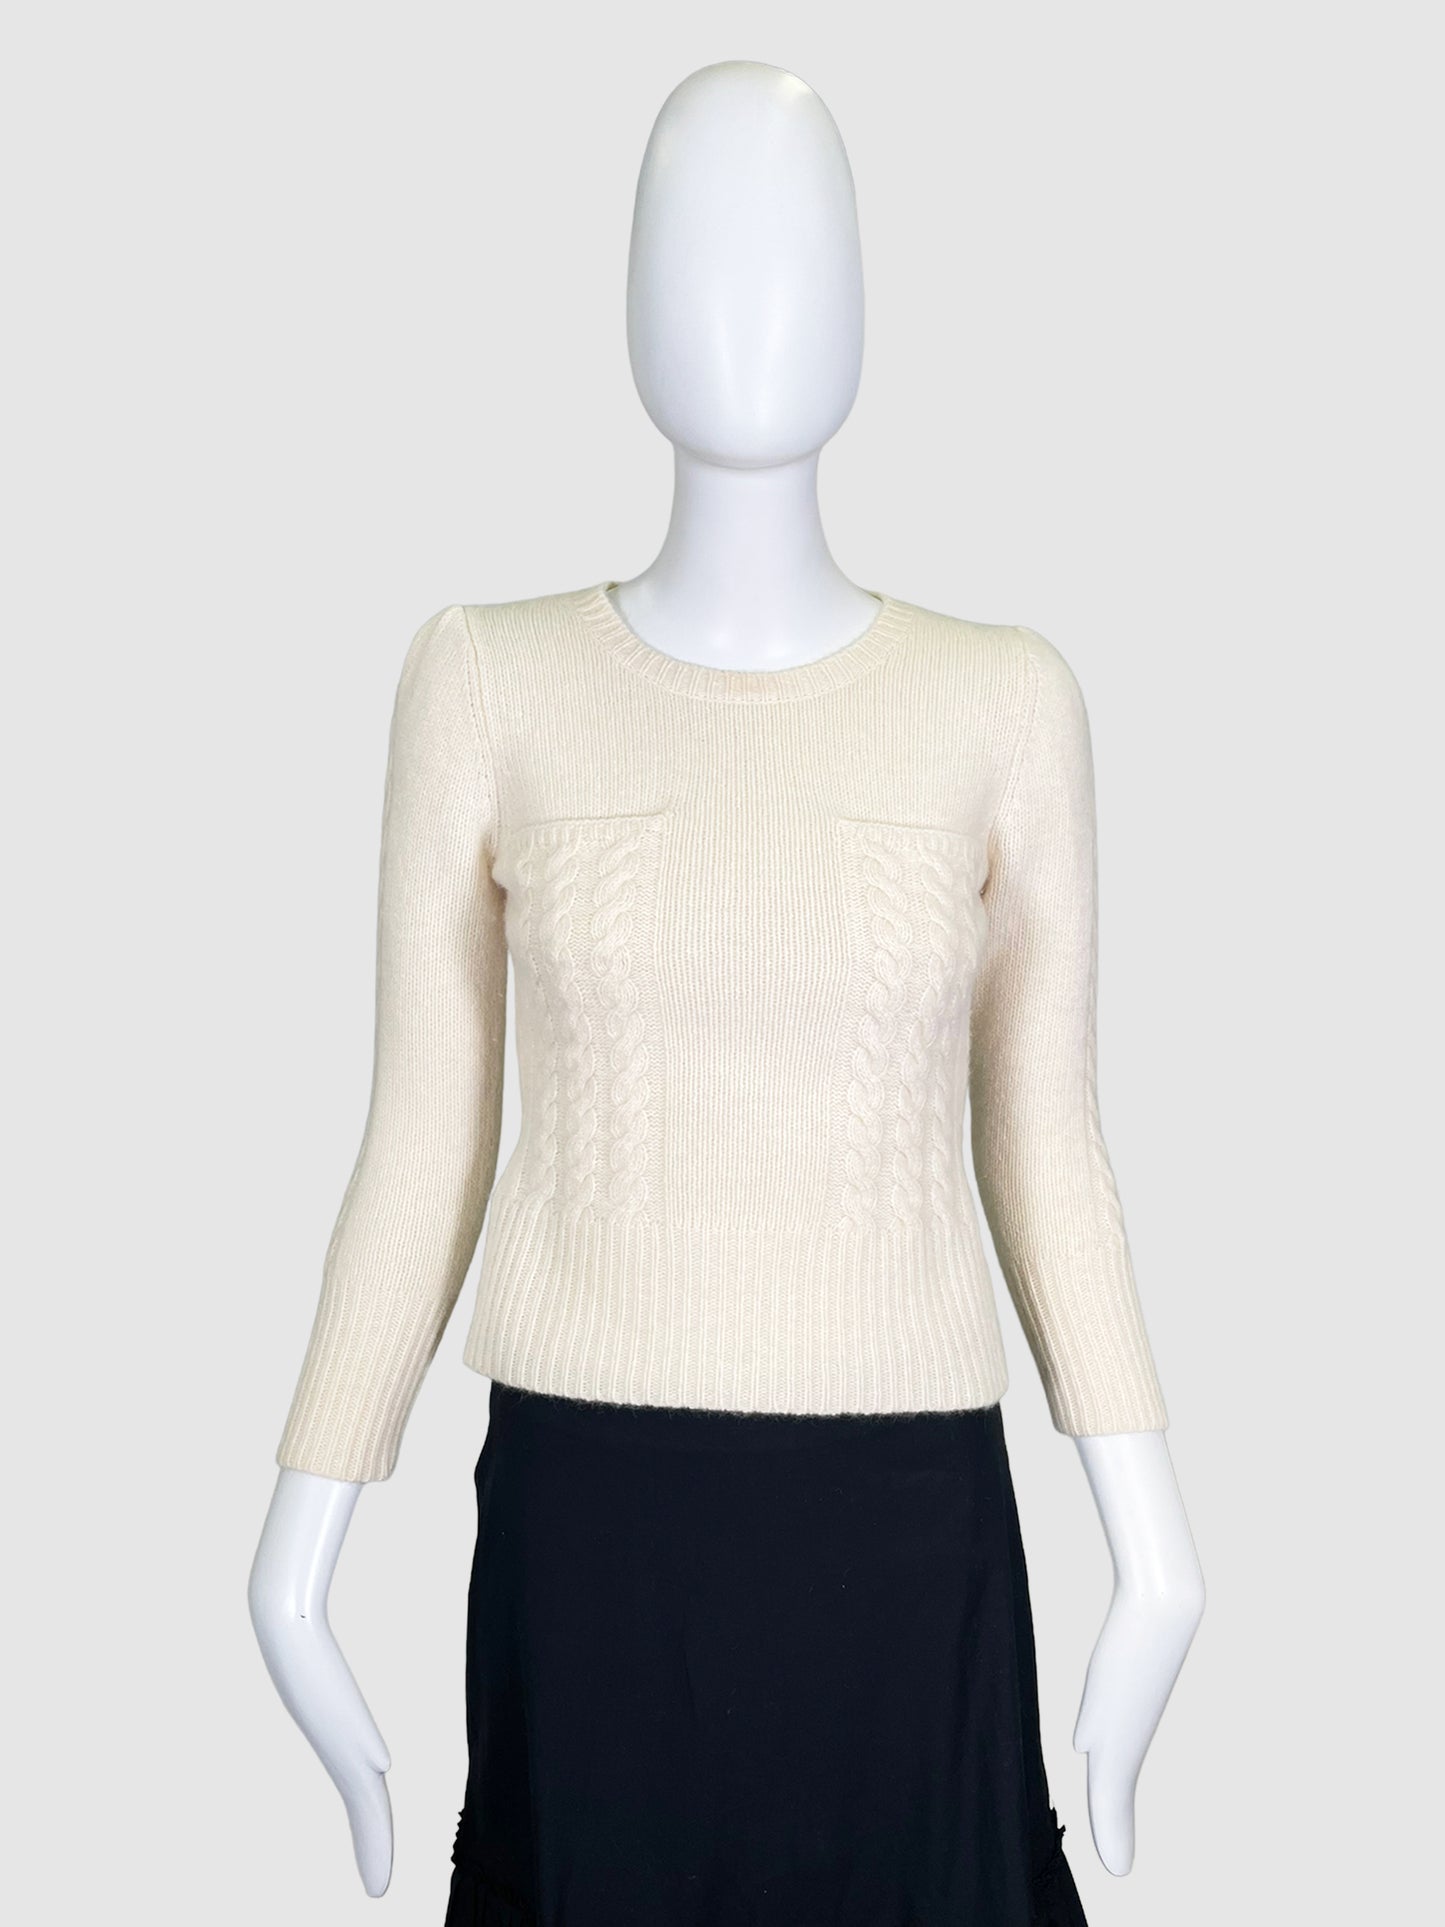 Diane von Furstenburg Wool Sweater - Size S